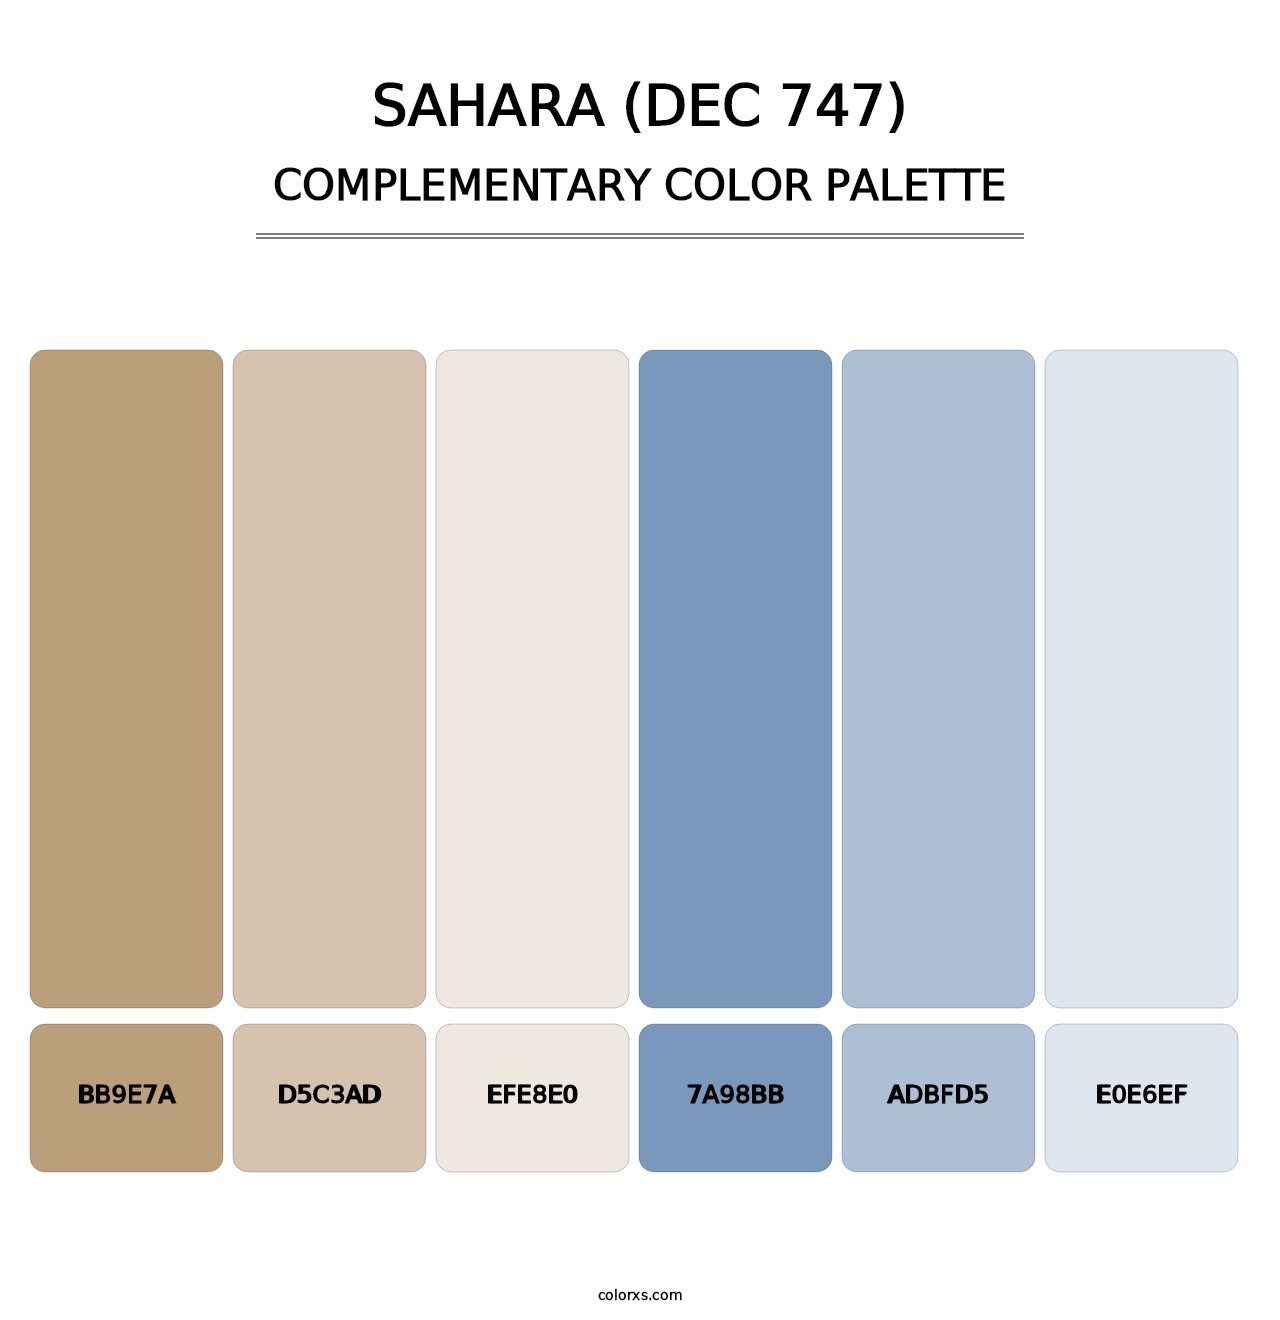 Sahara (DEC 747) - Complementary Color Palette